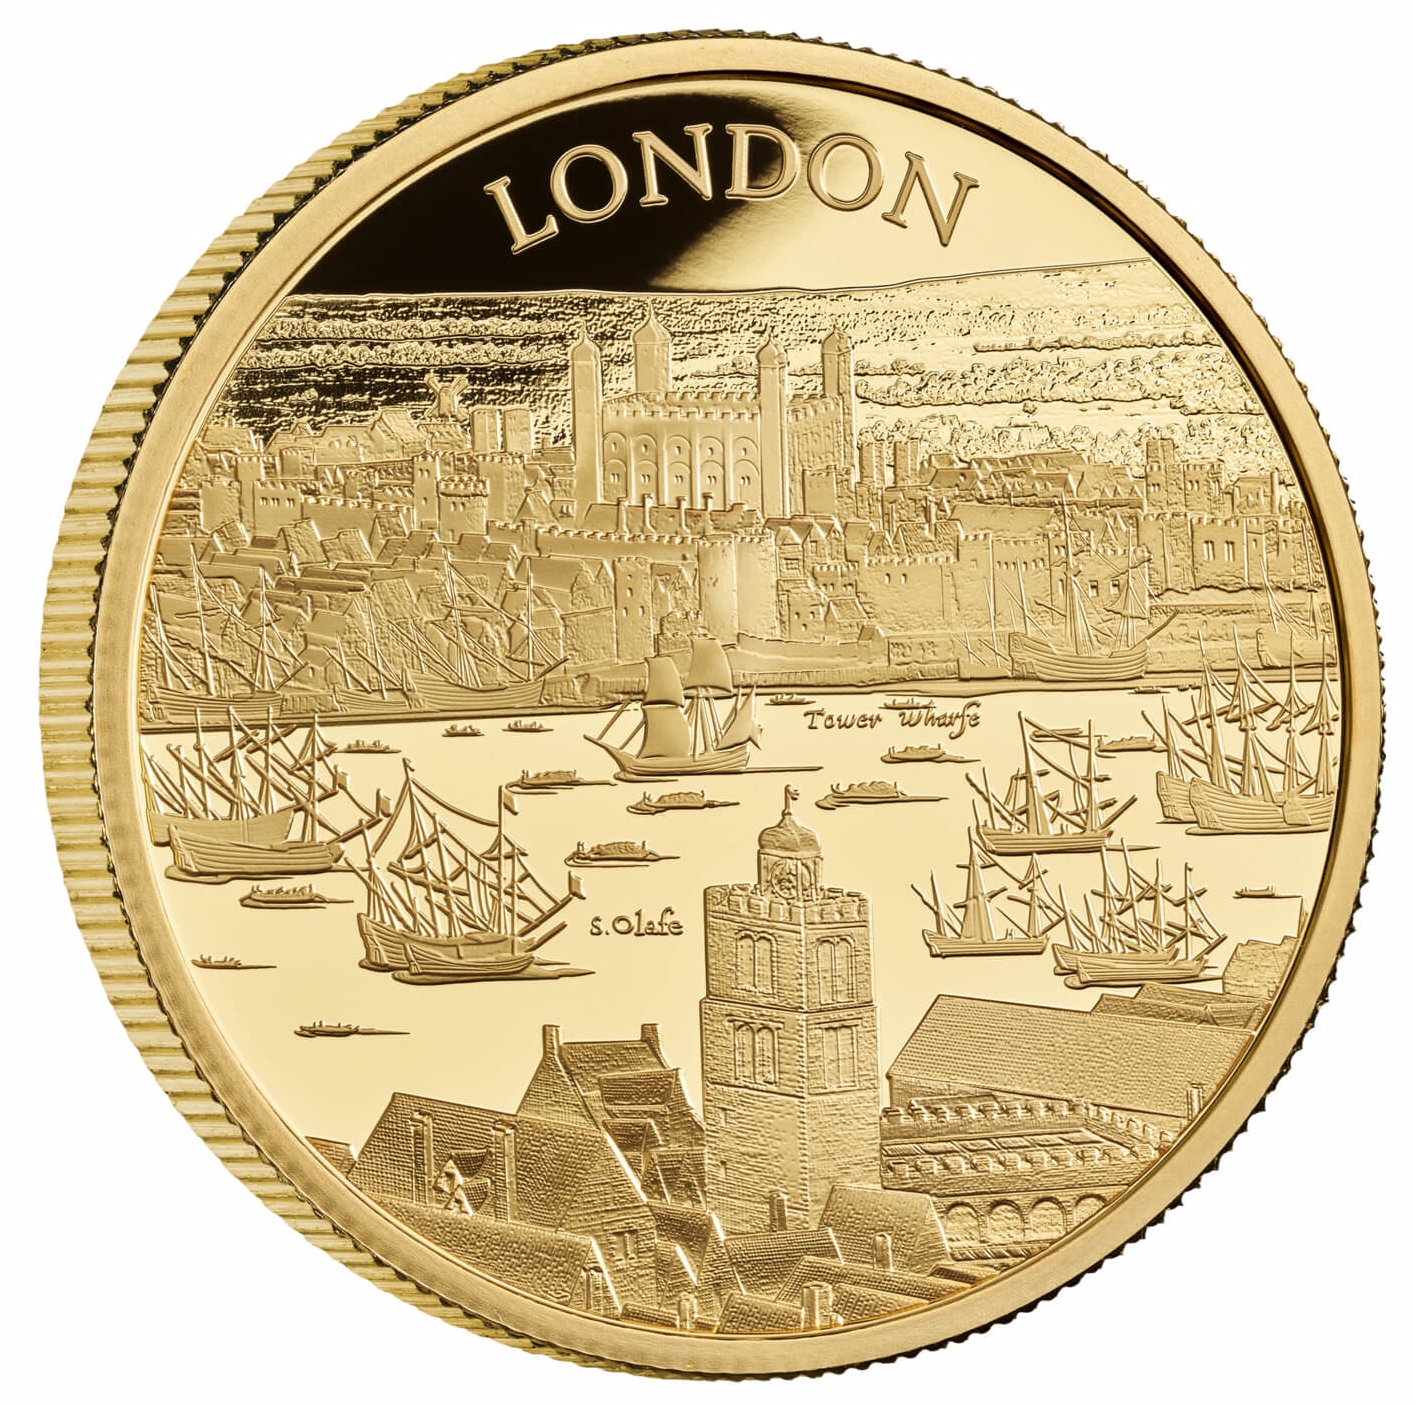 2022年 イギリス ロンドン 都市景観 プルーフ金貨 | Antique Coin ALE